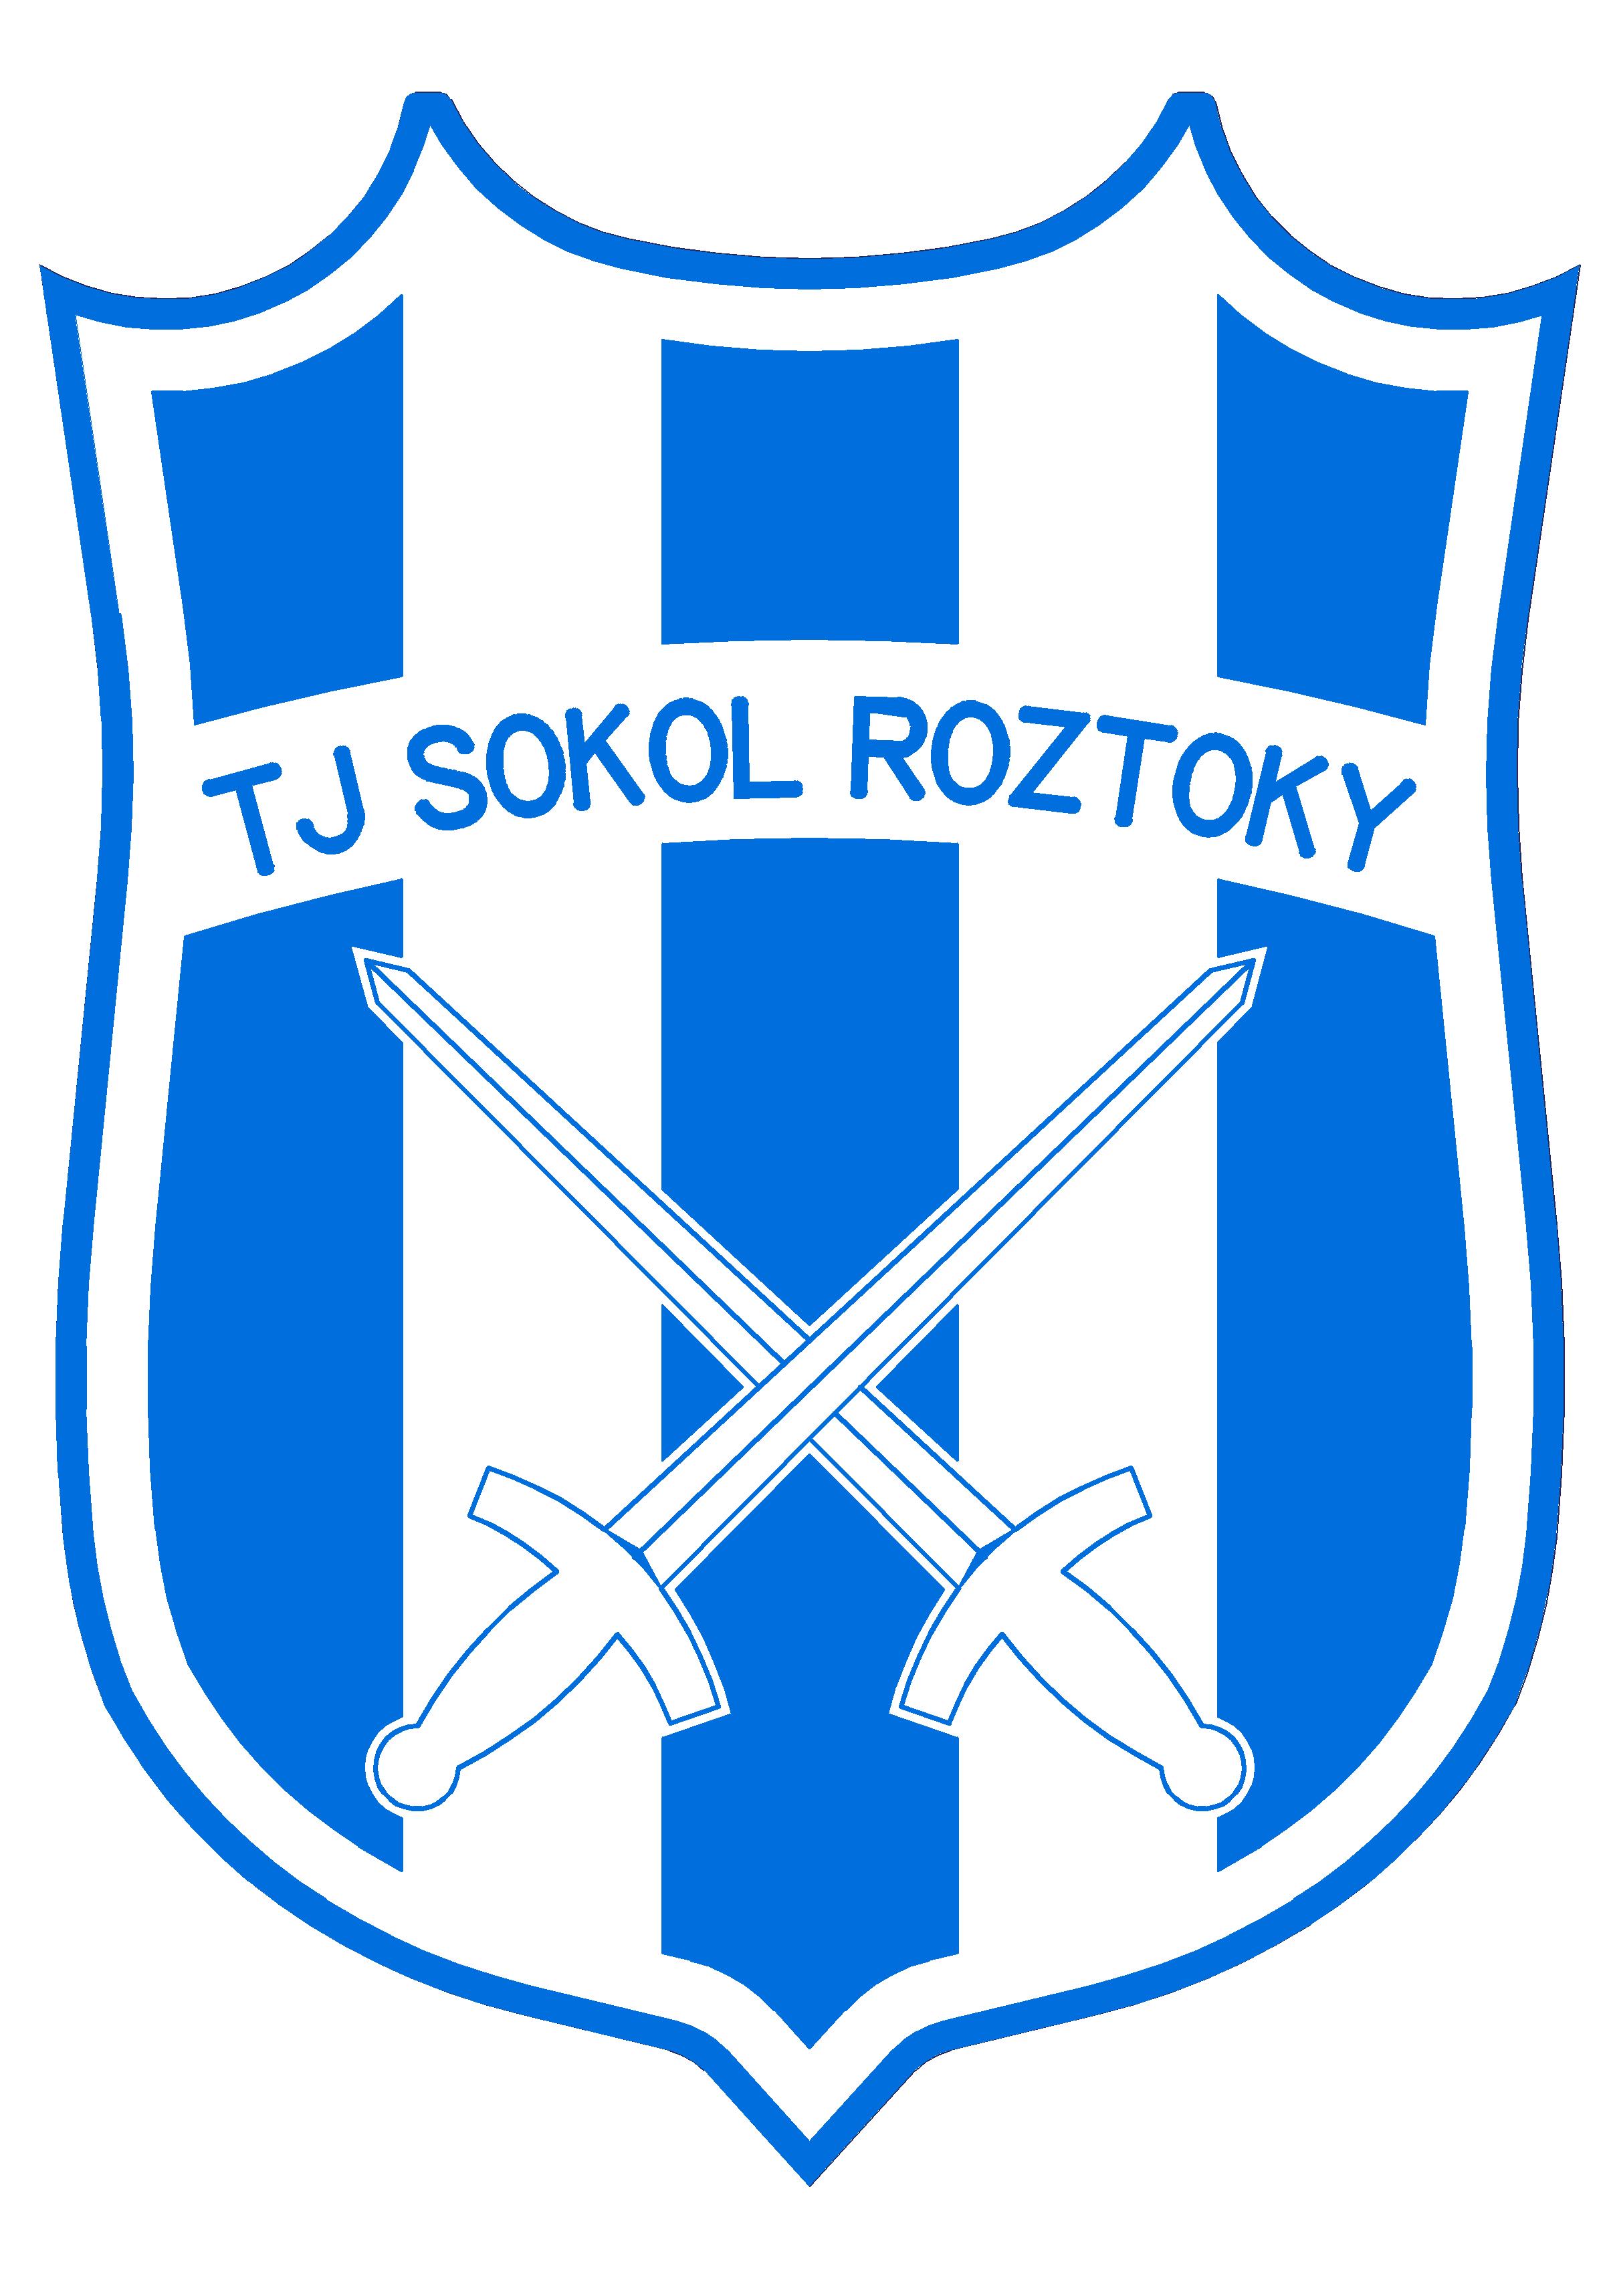 Tělovýchovná jednota Sokol Roztoky u Jilemnice, z.s.